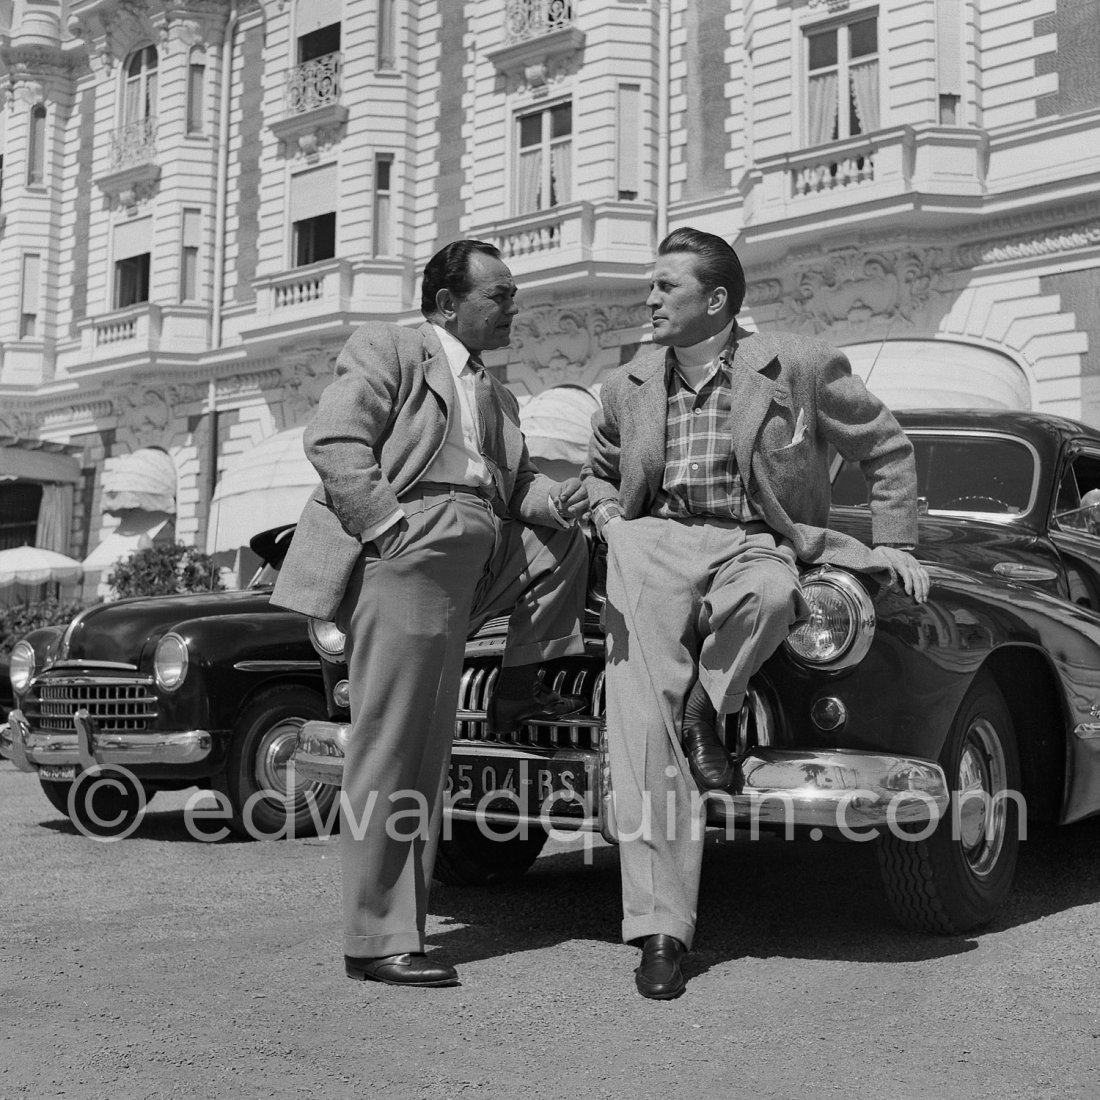 ¡Feliz jueves, cinéfilos! 🌞

En pleno Festival de #Cannes2024 🇫🇷 recordemos a #EdwardGRobinson y a #KirkDouglas presentando #DosSemanasEnOtraCiudad en el festival allá por 1953.

Ya tenéis disponible la autobiografía de Robinson #TodosMisAyeres publicada en primicia en español.